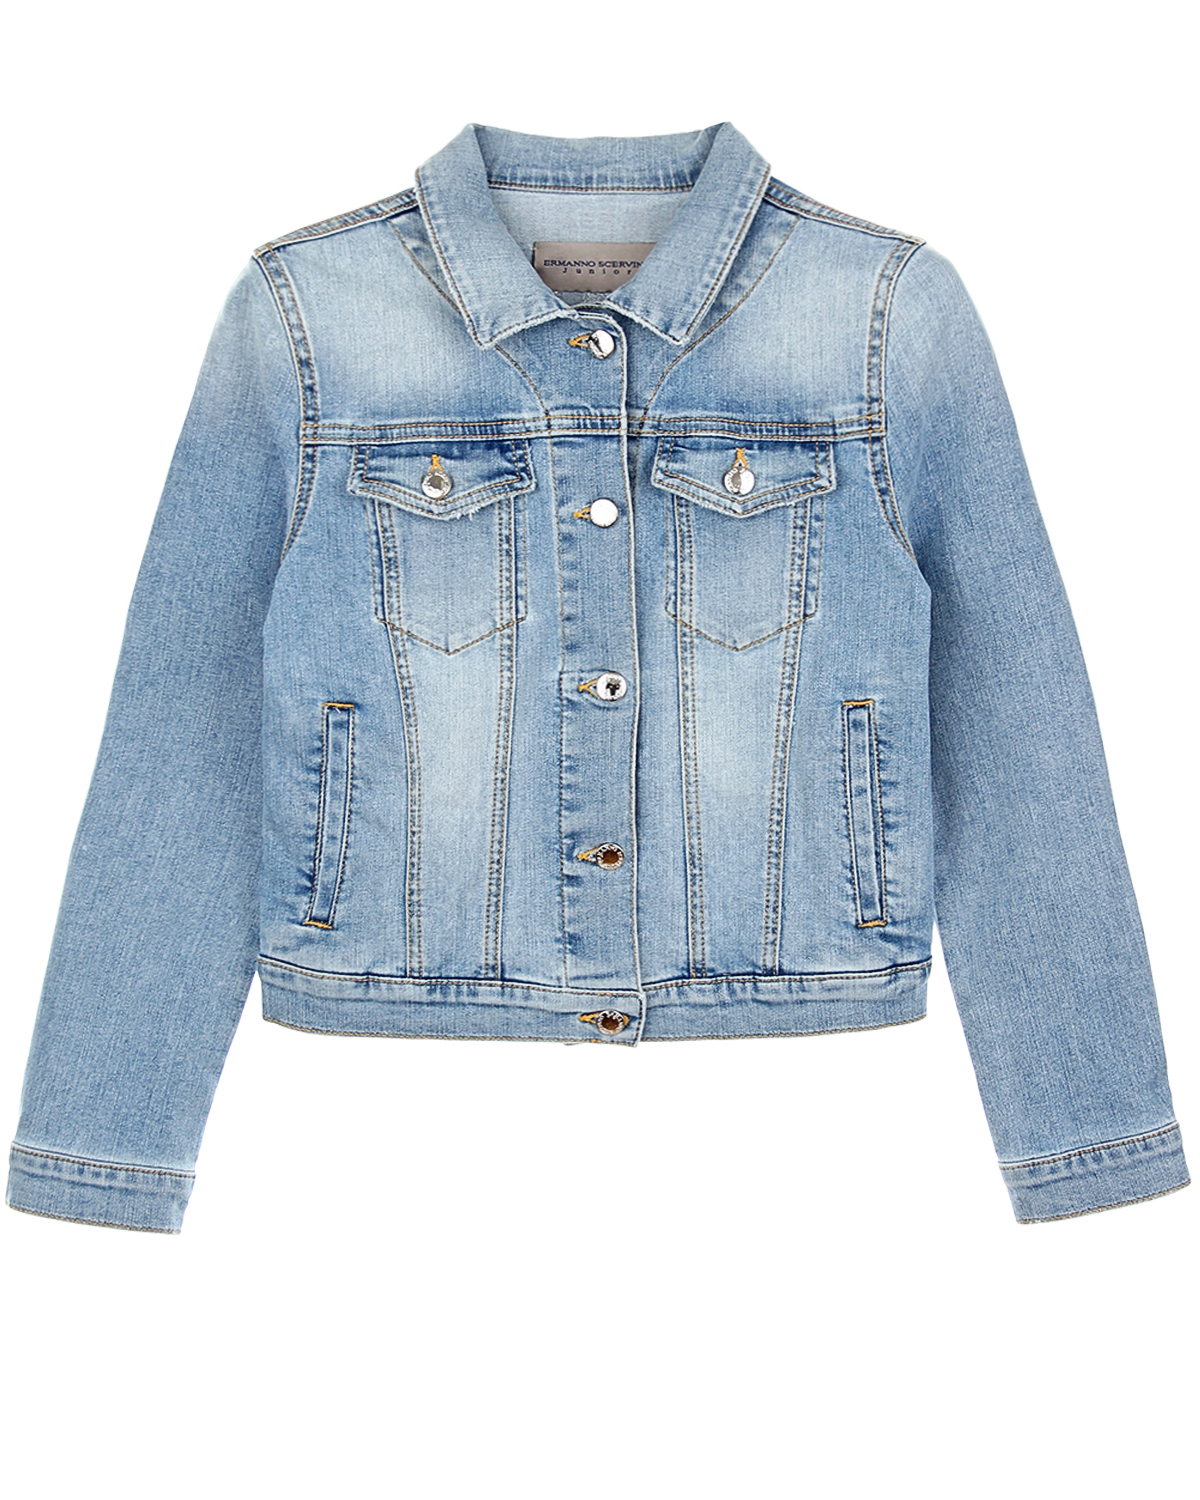 Джинсовая куртка со стразами Ermanno Scervino детская, размер 176, цвет голубой - фото 1